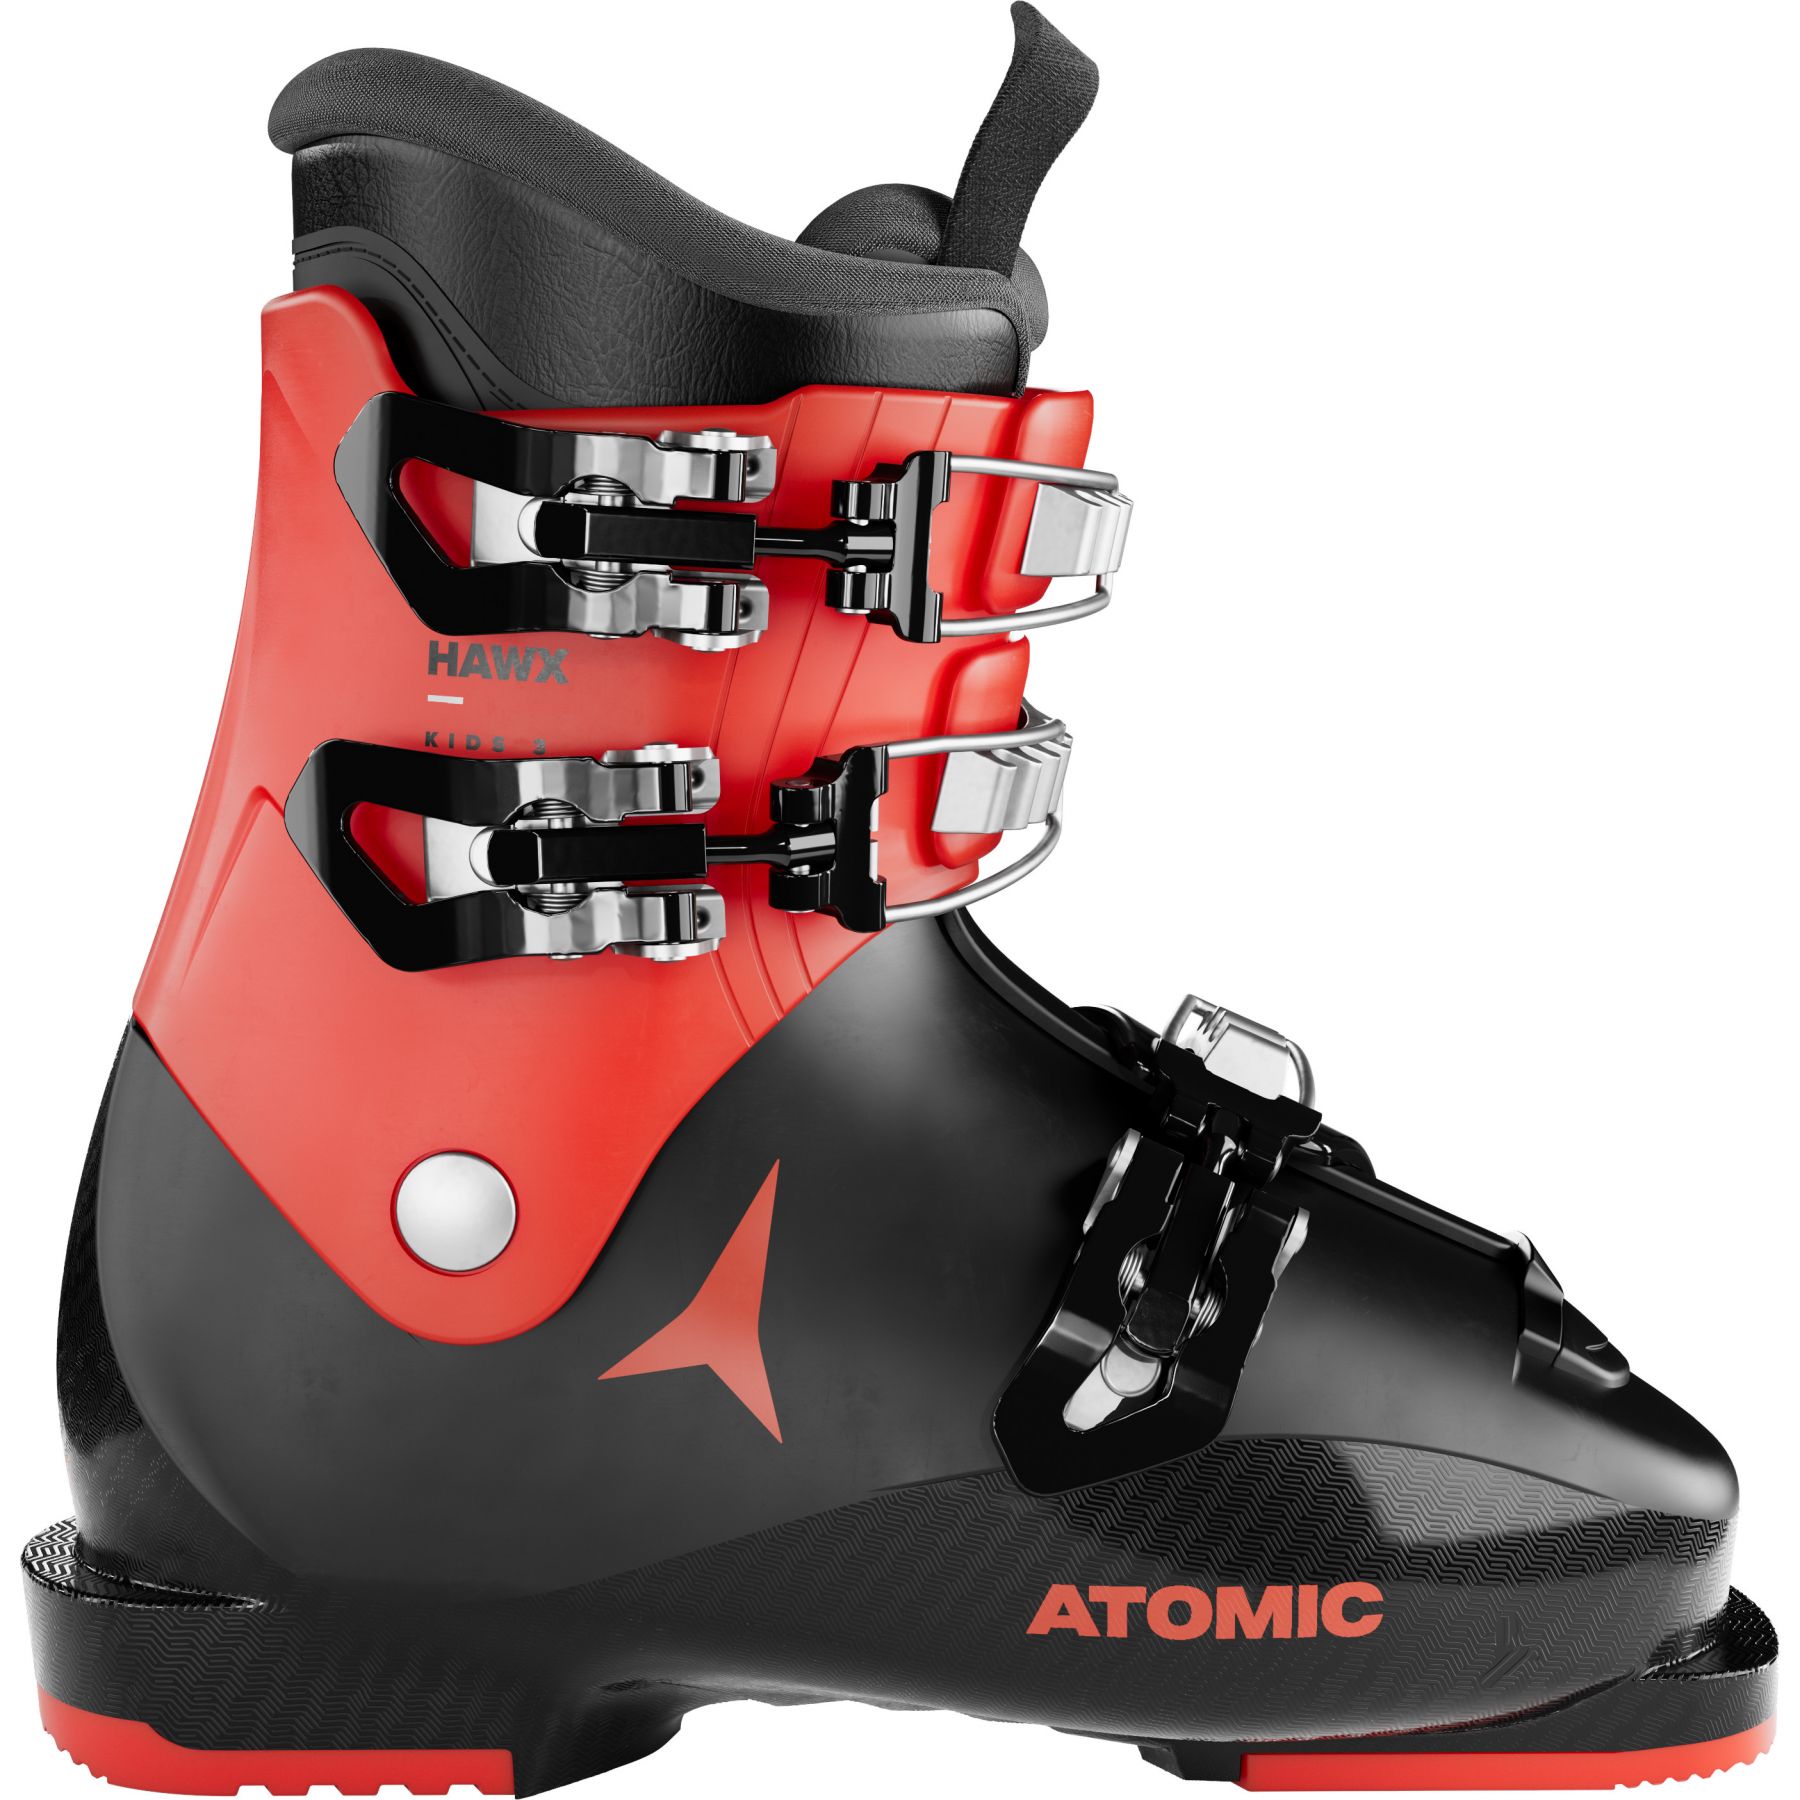 Billede af Atomic Hawx Kids 3, skistøvler, junior, sort/rød hos Skisport.dk